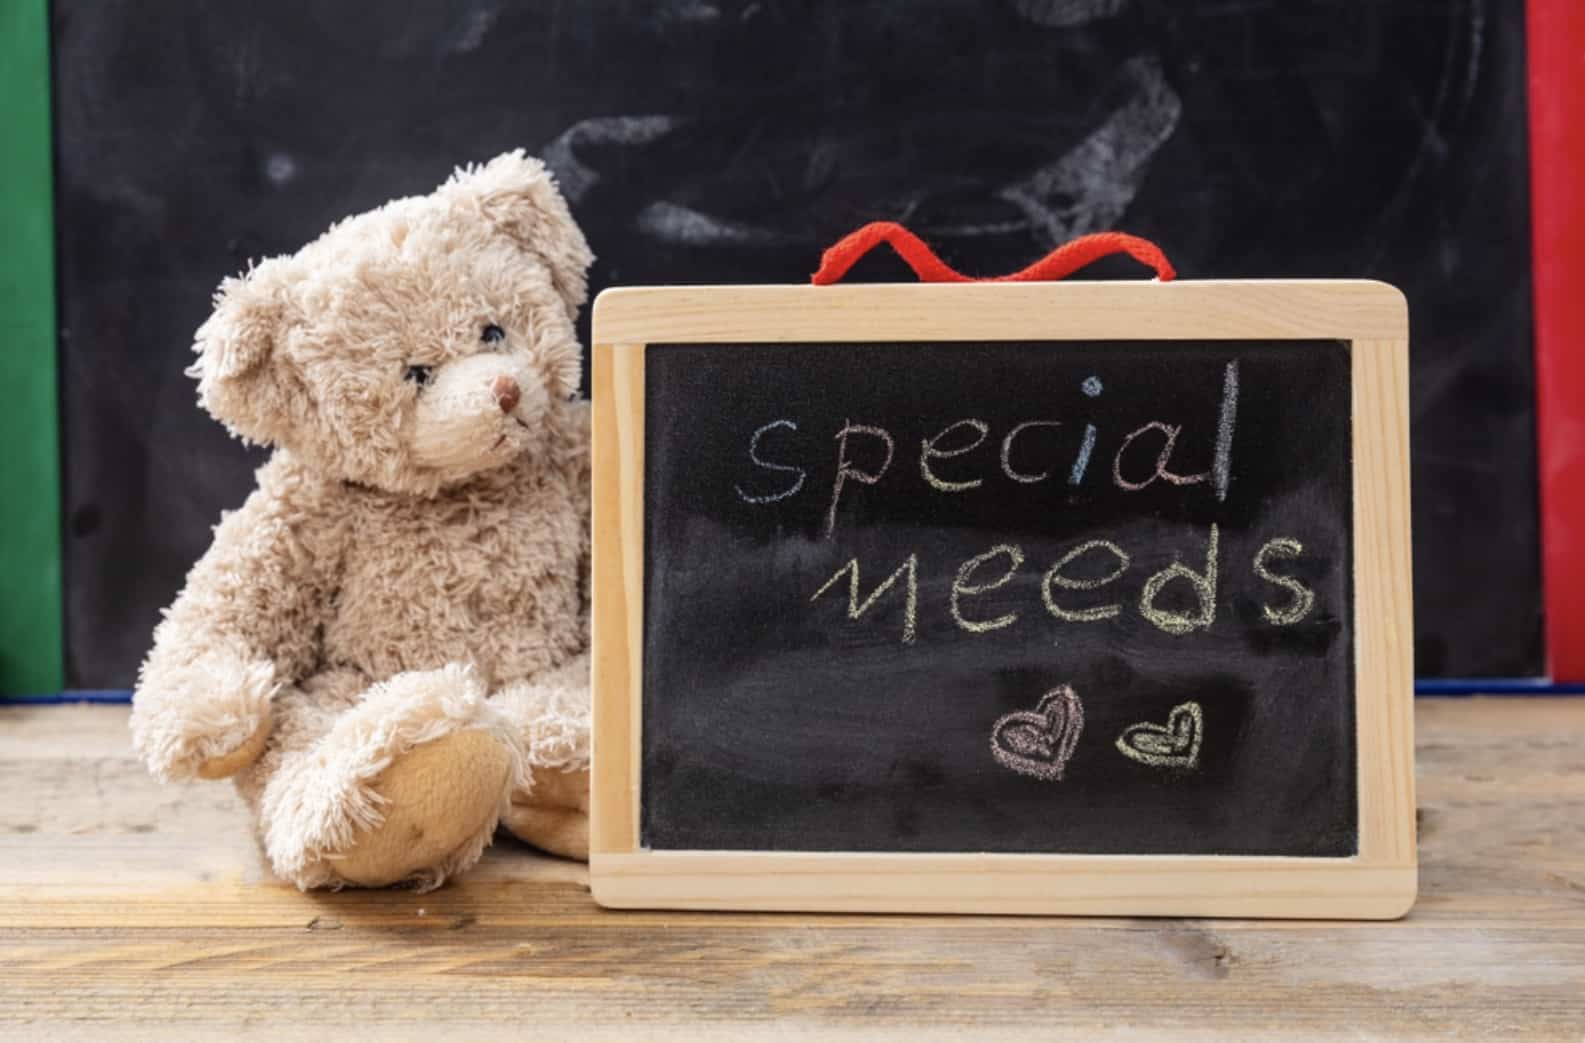 Homeschooling Special Needs